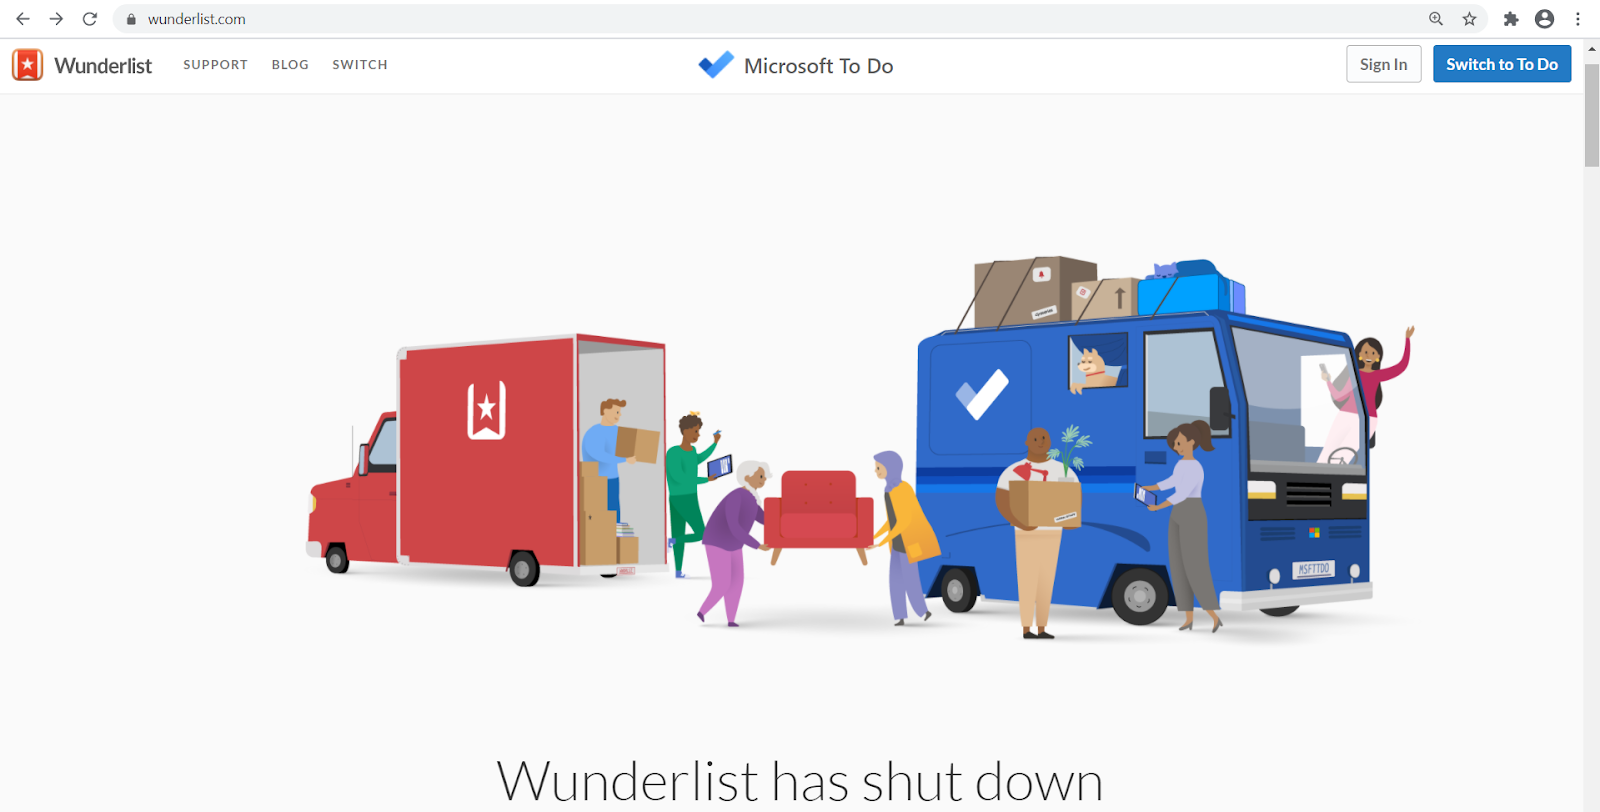 wunderlist has shut down